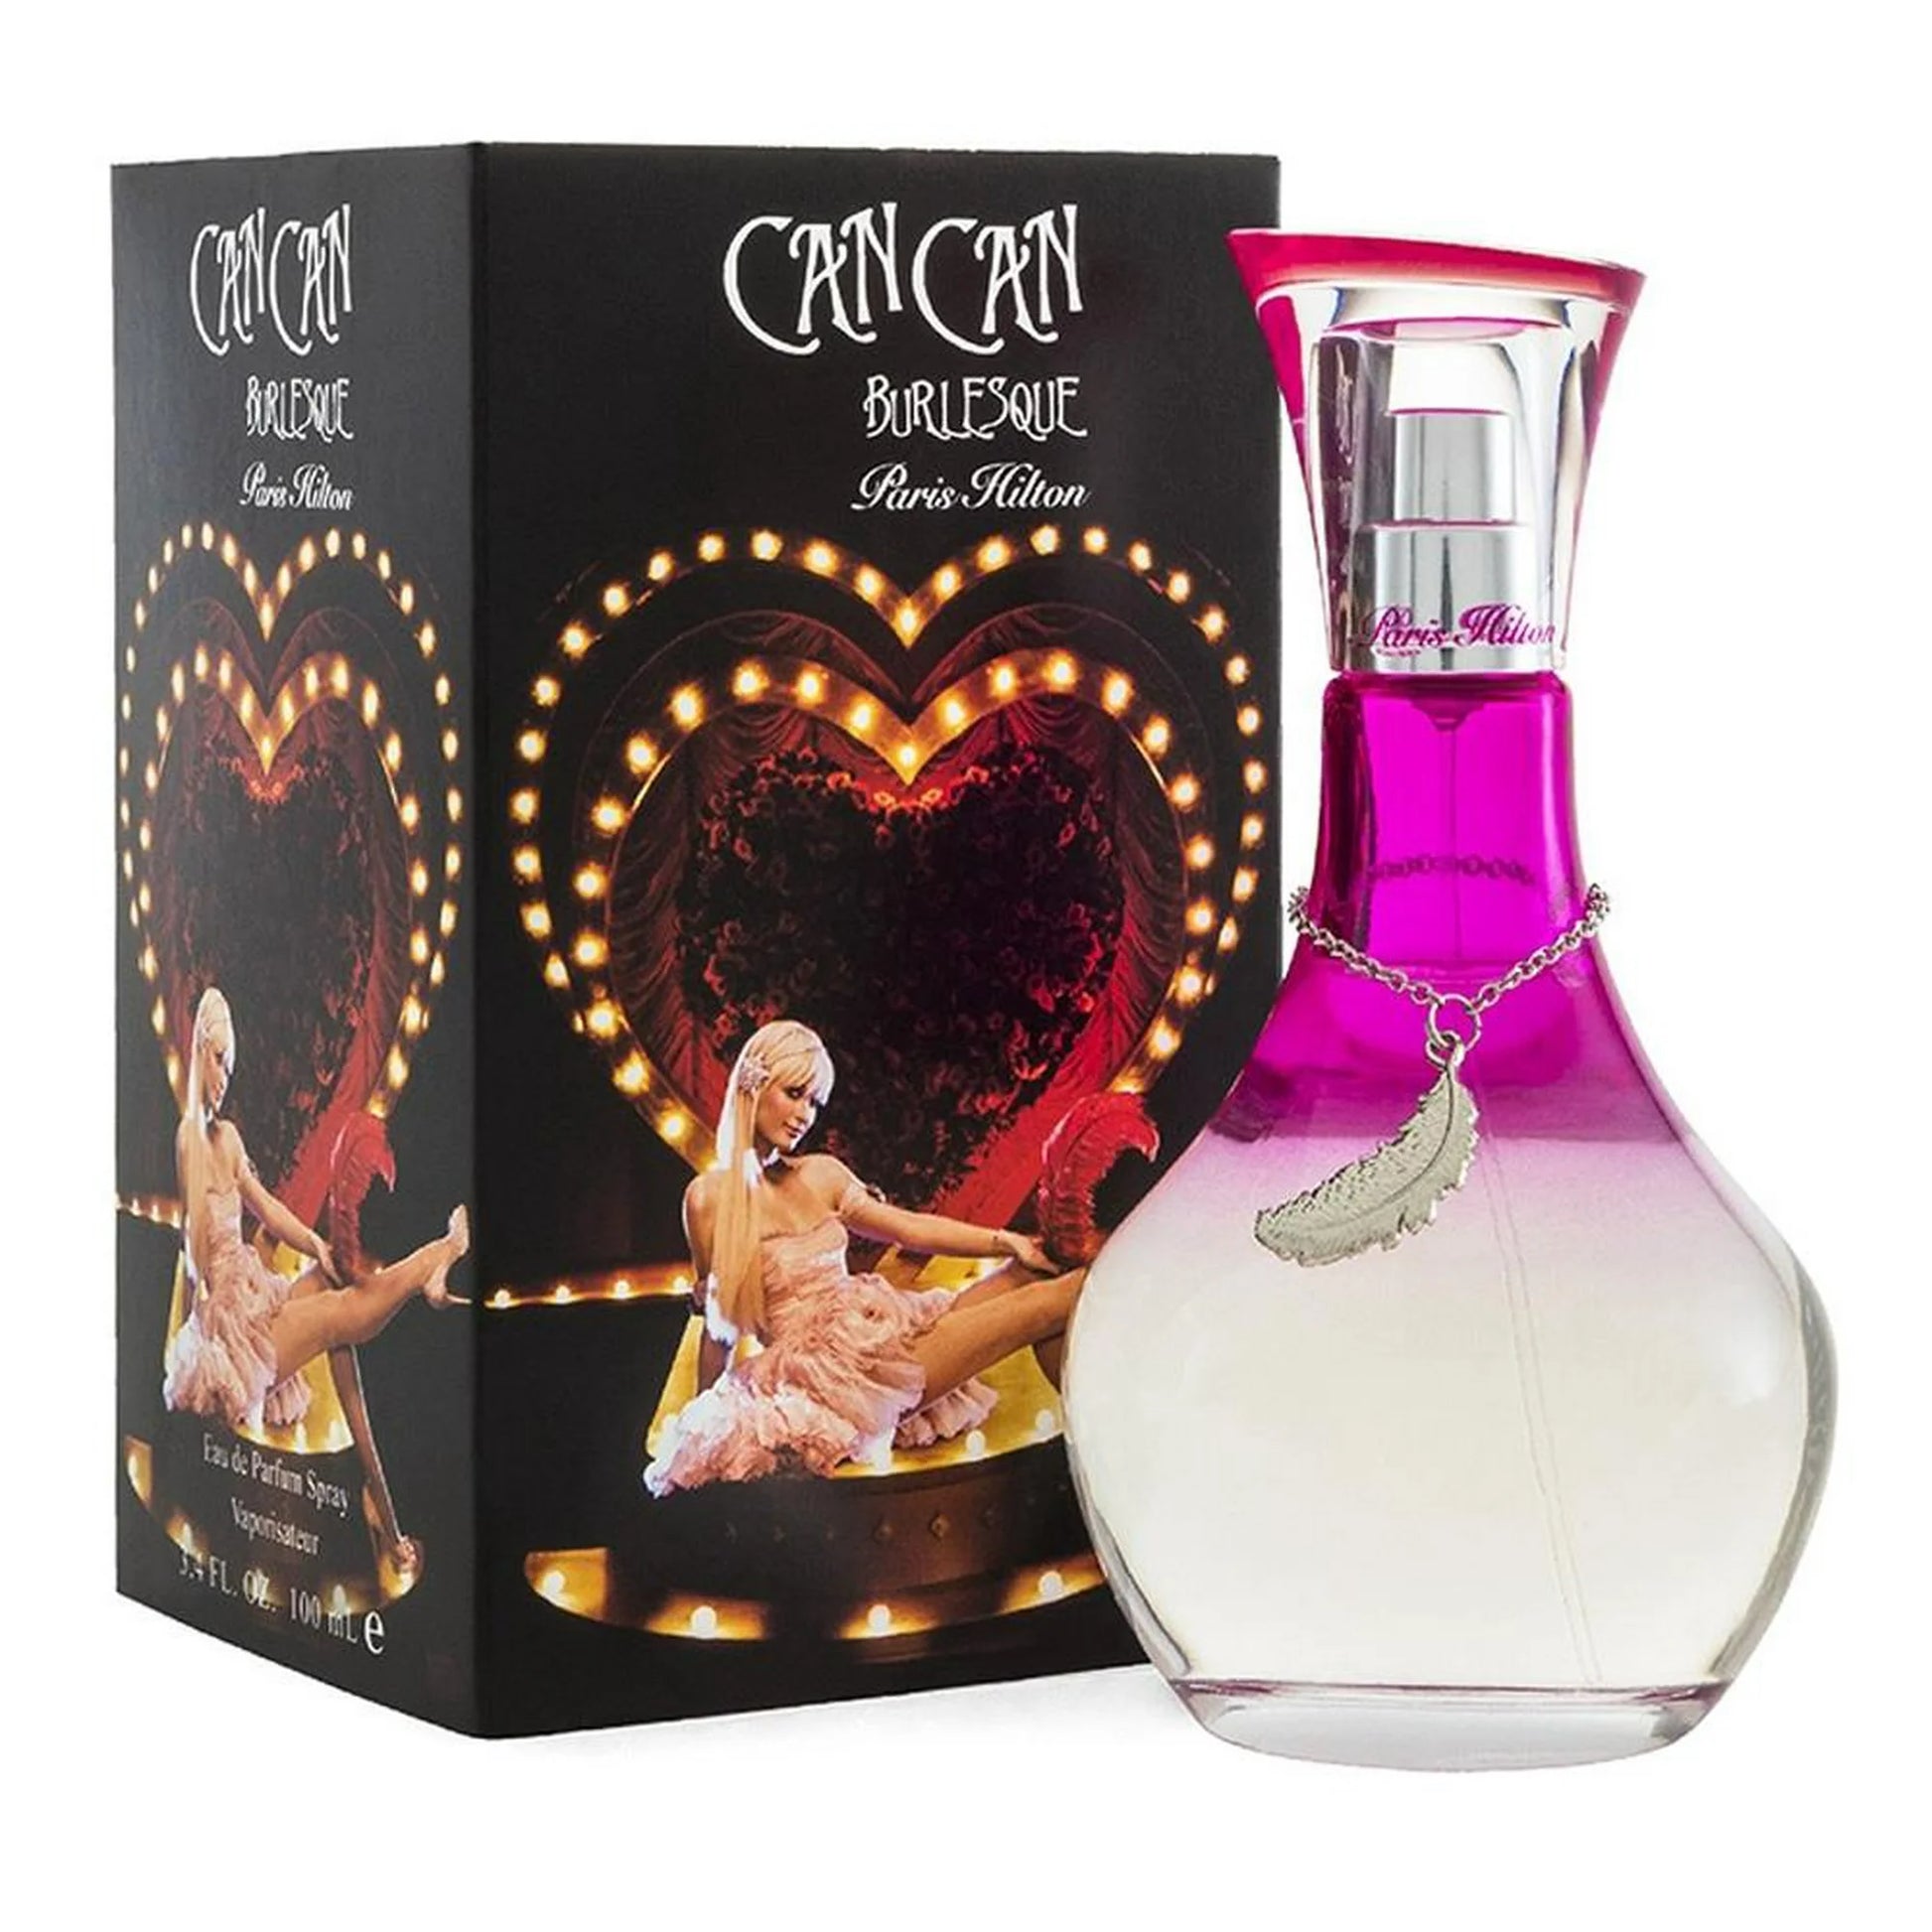 Las mejores ofertas en Can Can de perfumes para De mujer Paris Hilton